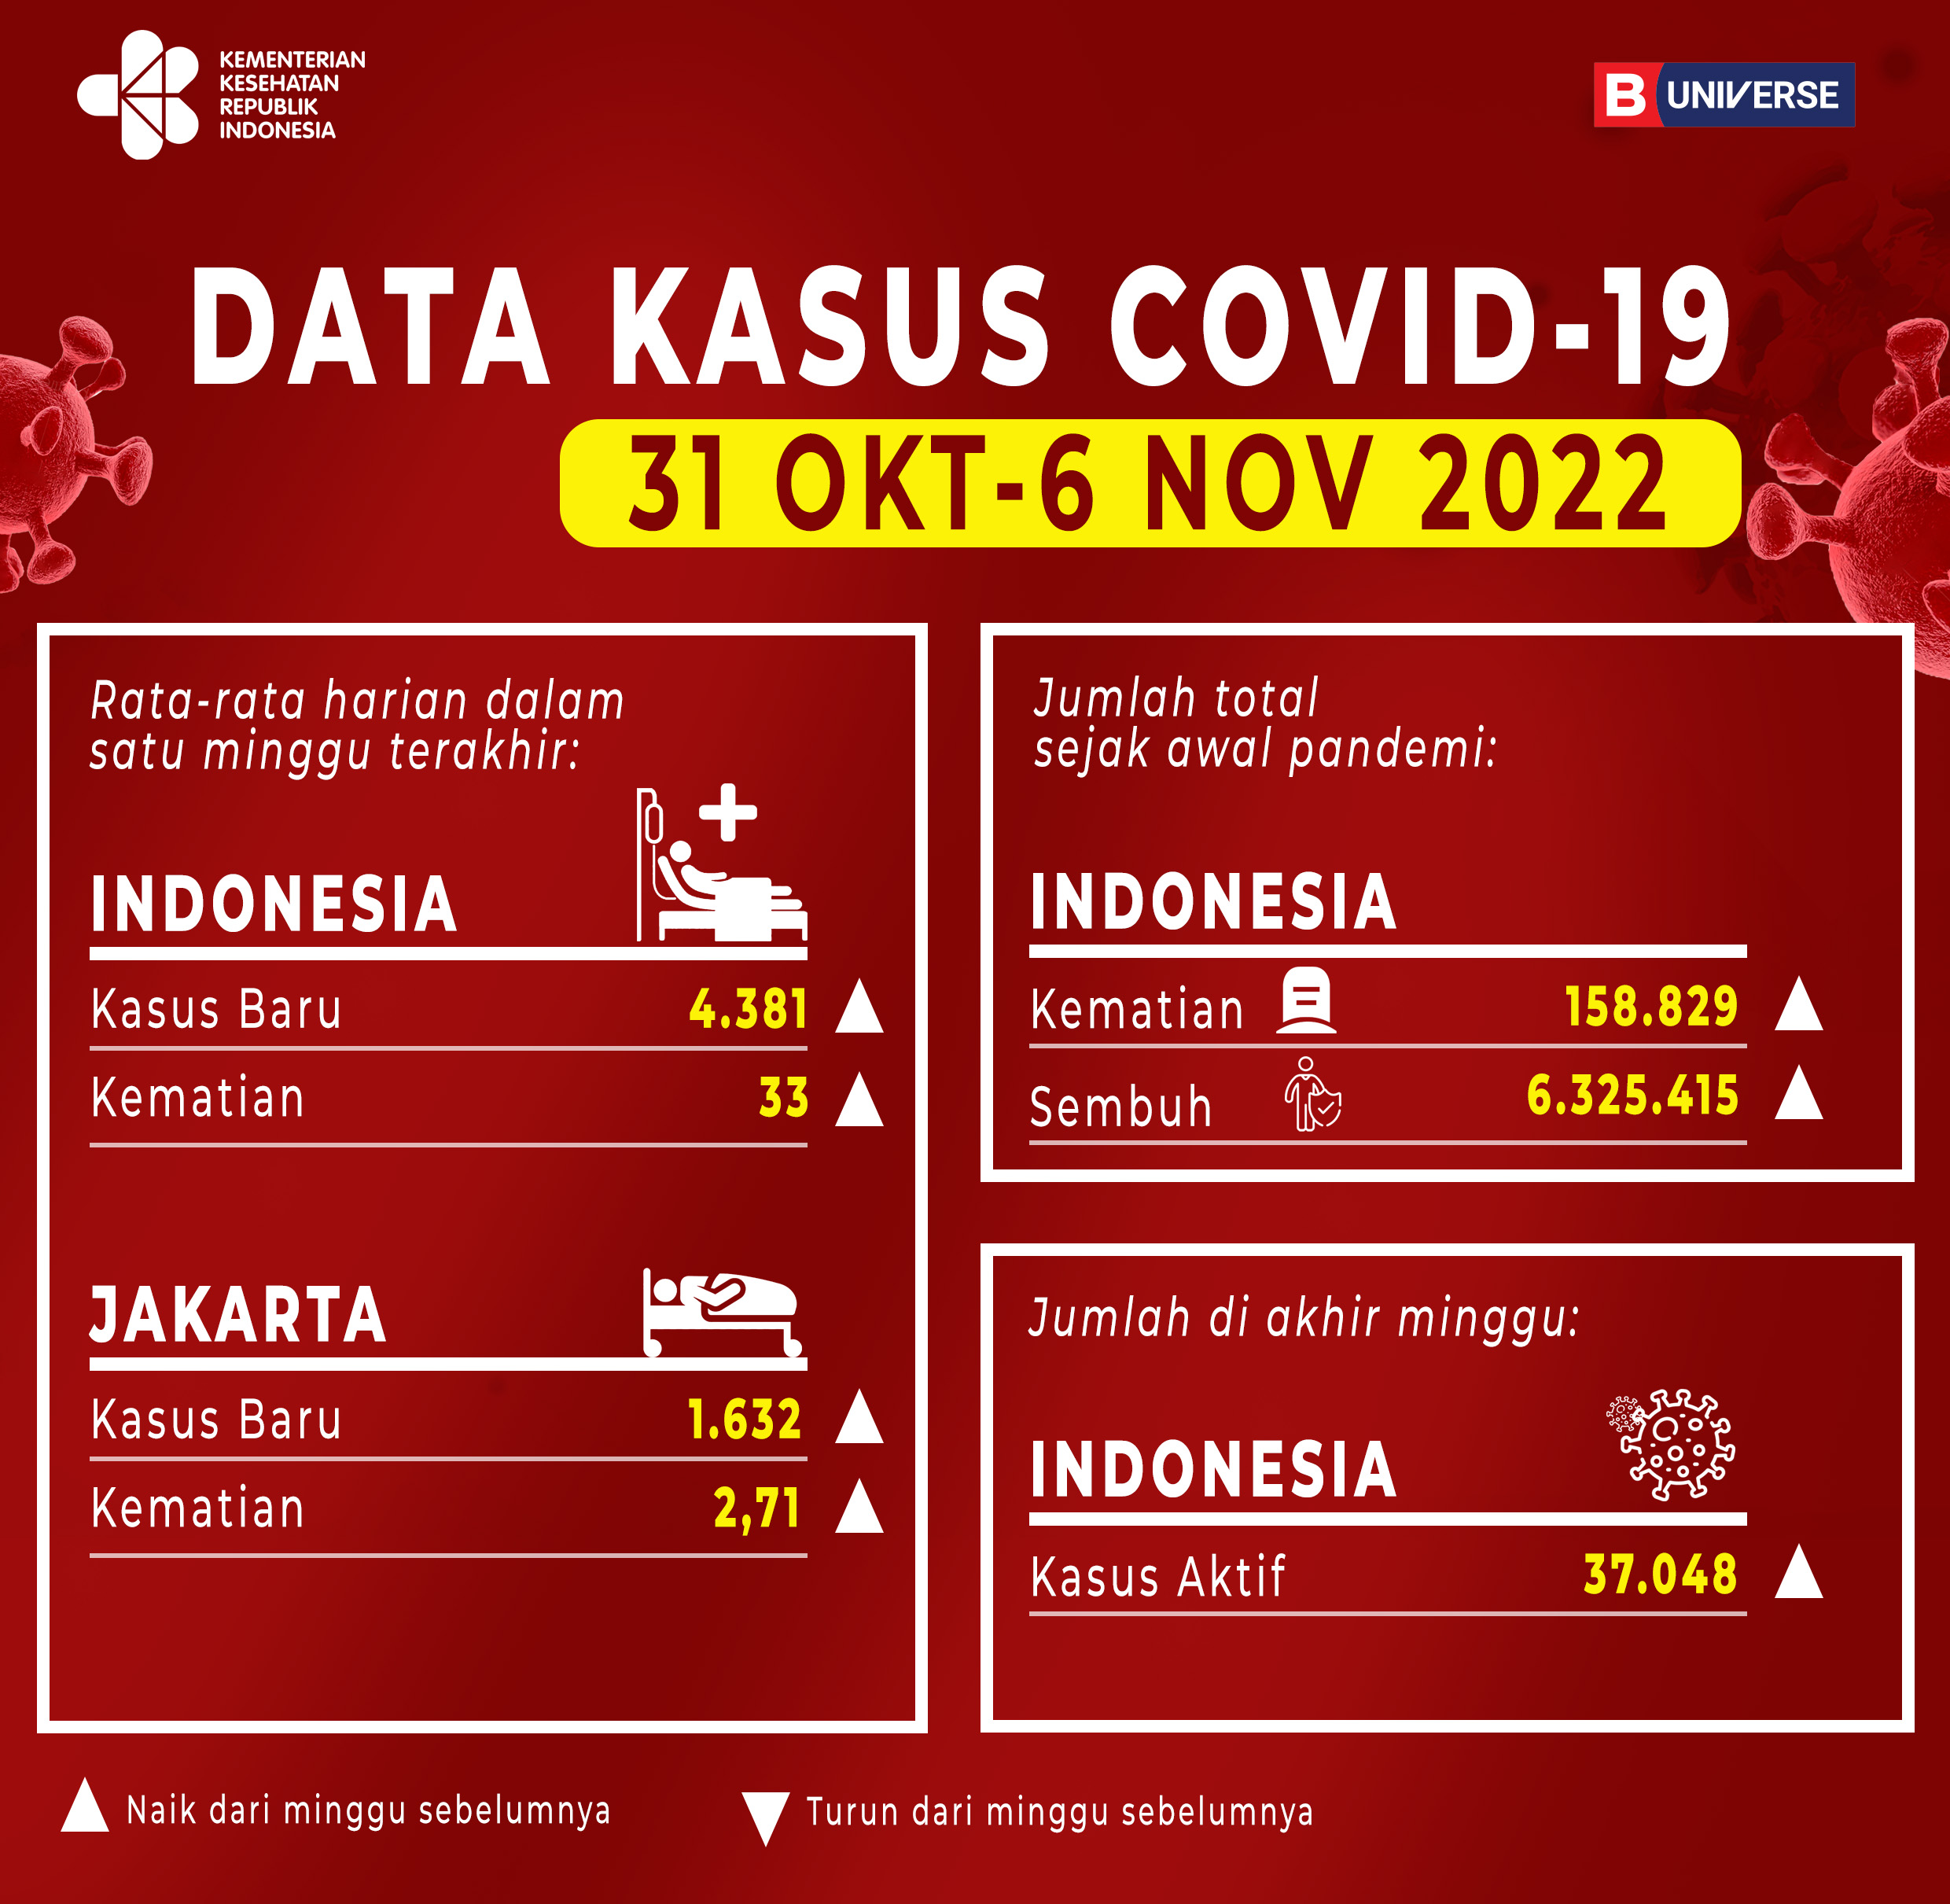 Infografik Kasus Covid-19 di Indonesia pada 31 Oktober-6 November